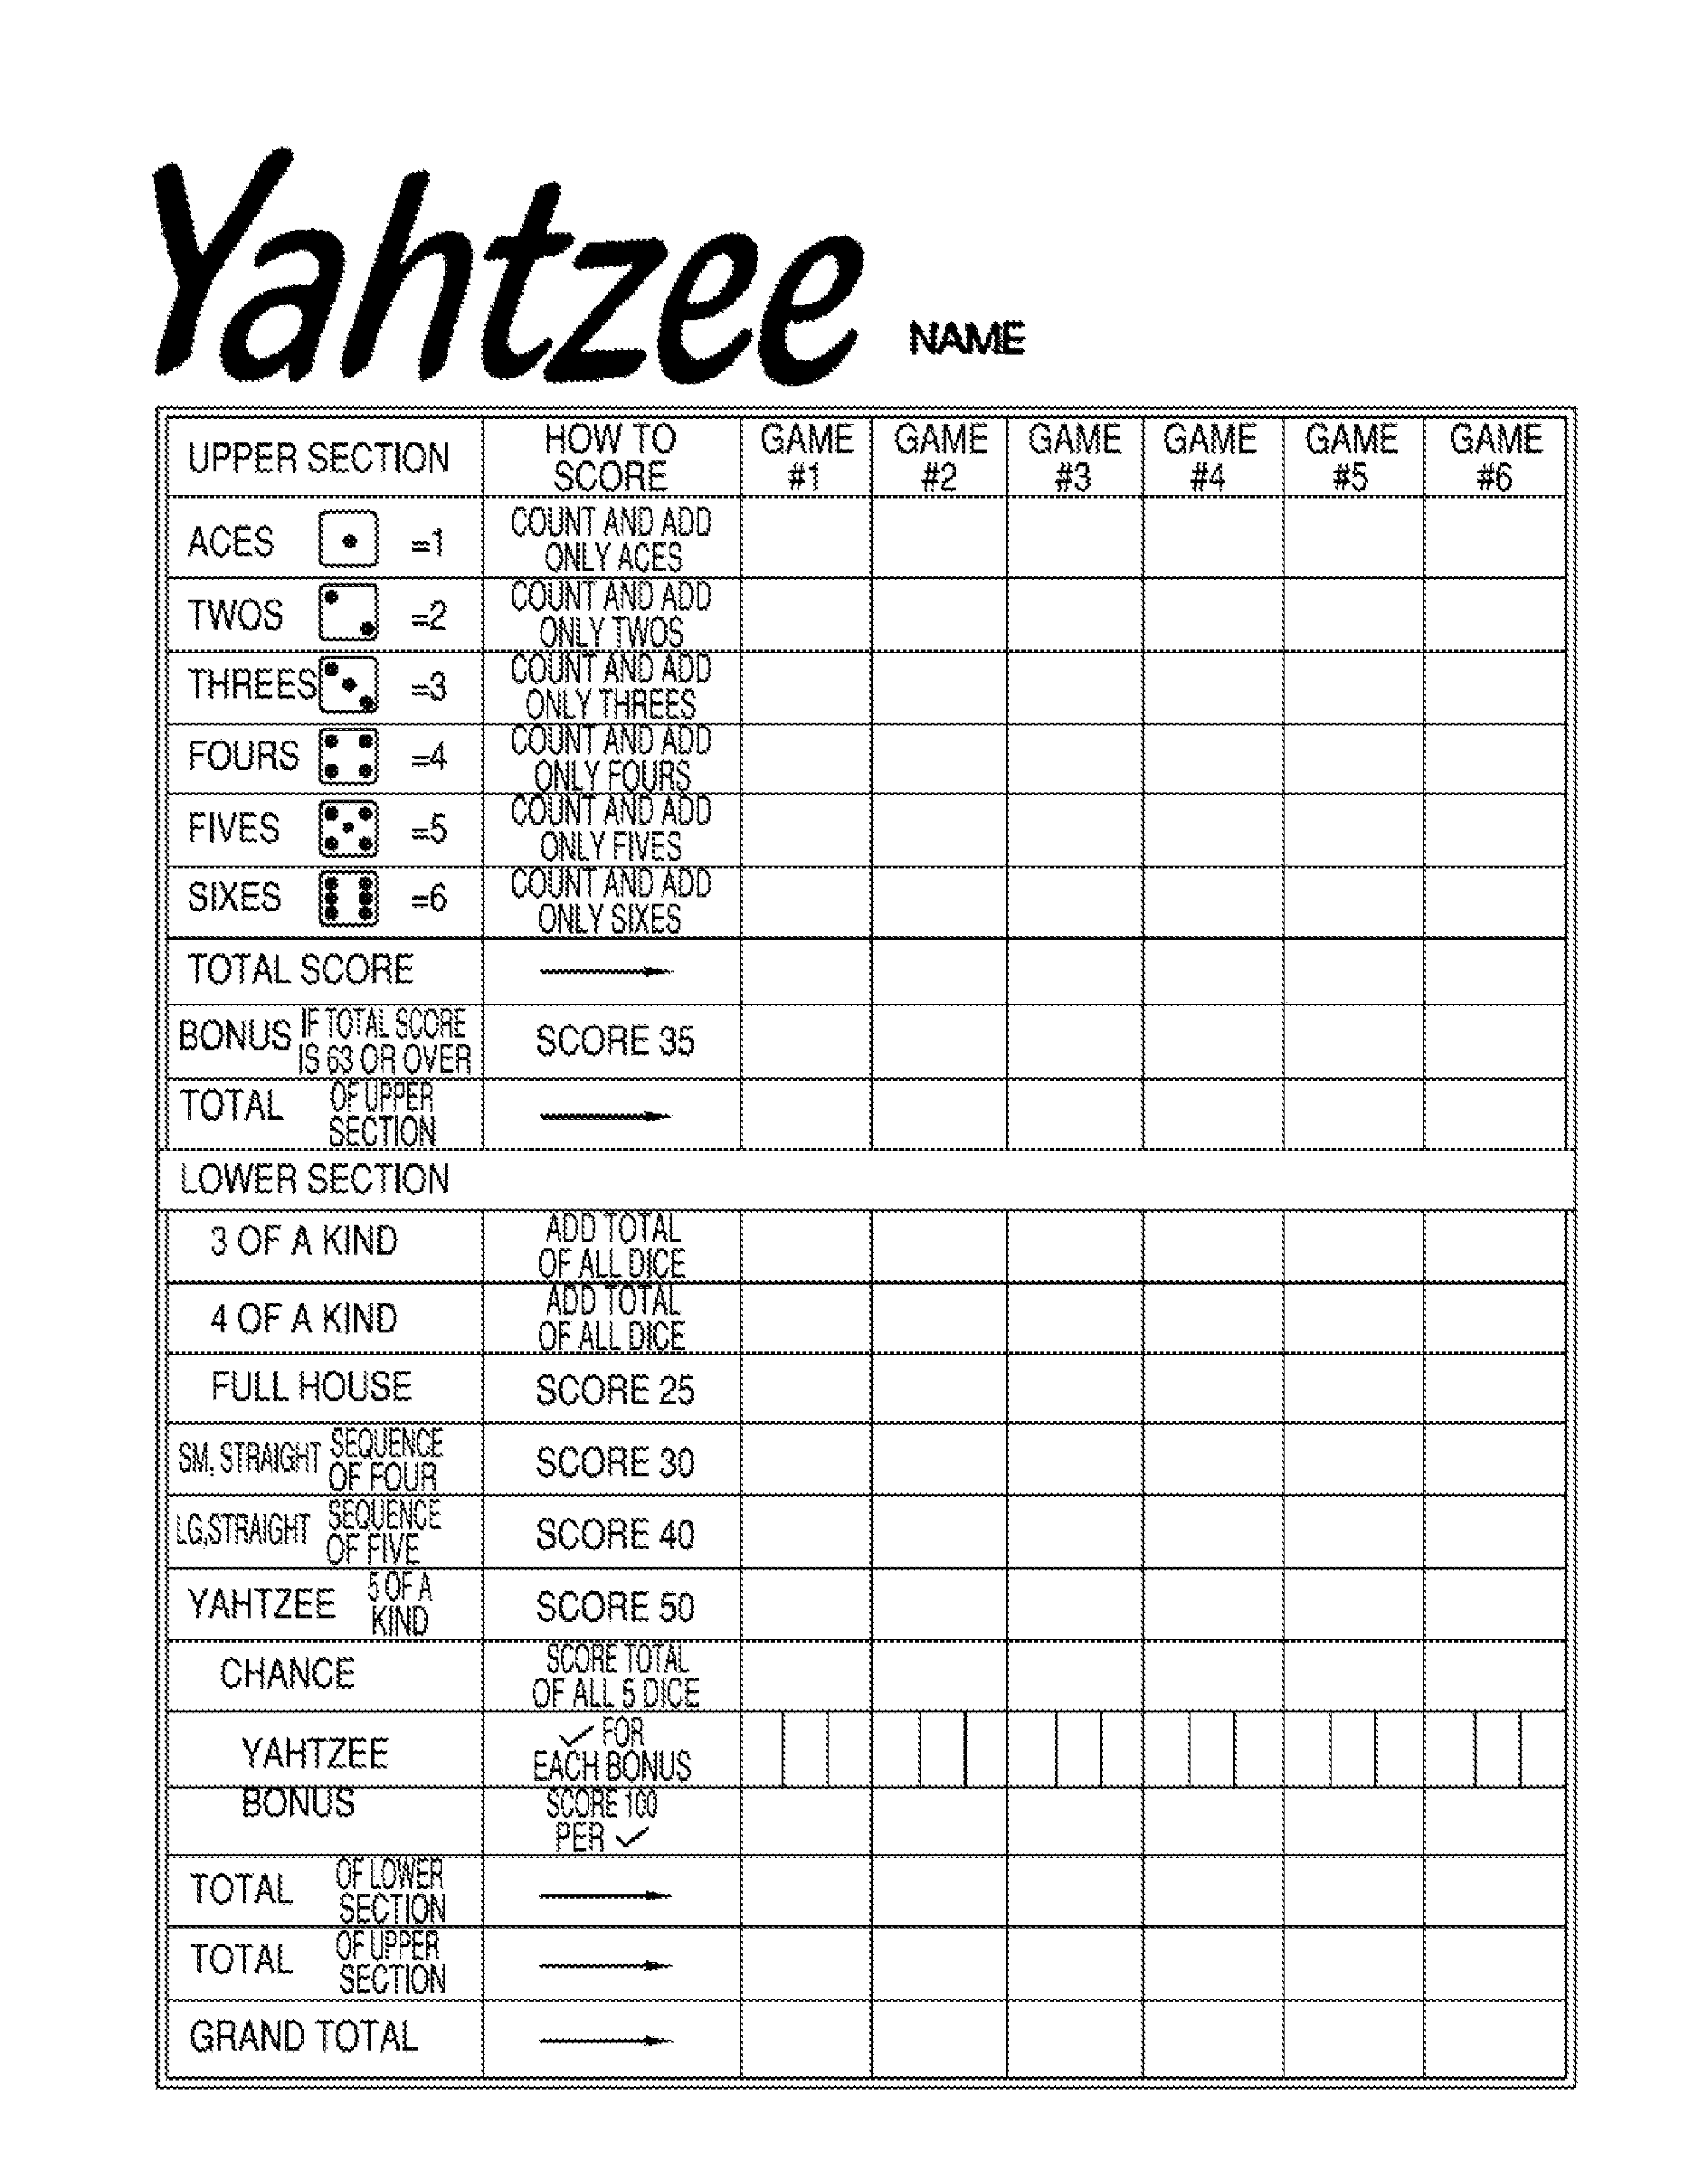 yahtzee sheets printable Learning Printable